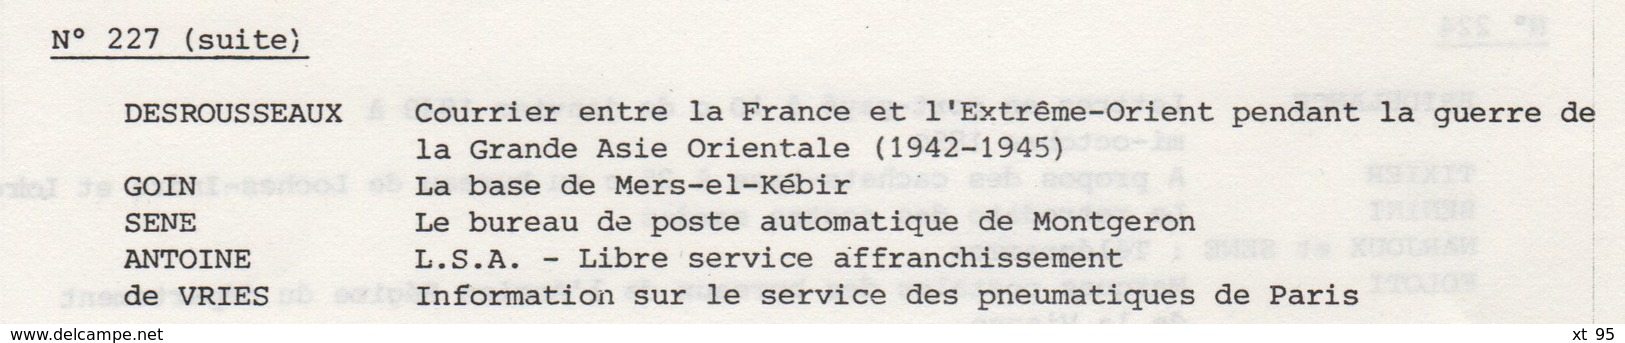 Les Feuilles Marcophiles - N°227 - Voir Sommaire - Frais De Port 2€ - Philatélie Et Histoire Postale